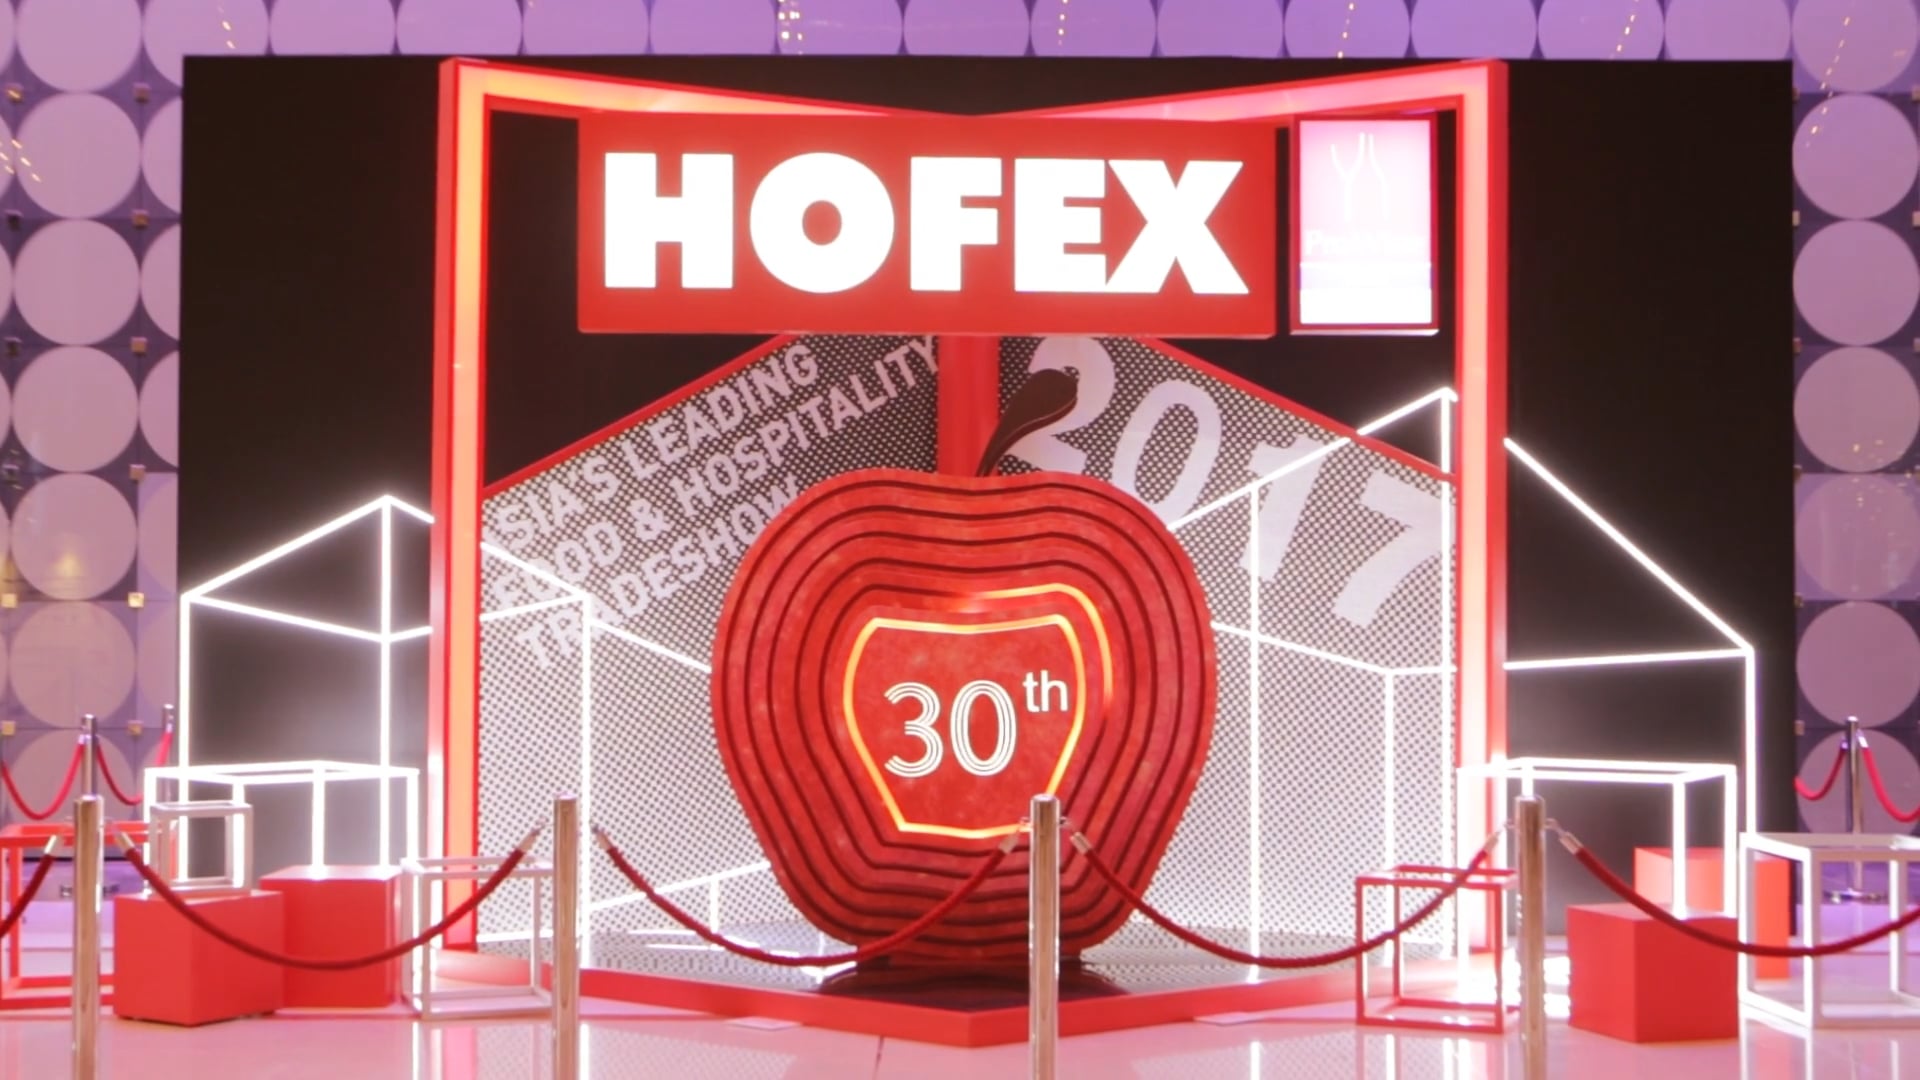 HOFEX 2017